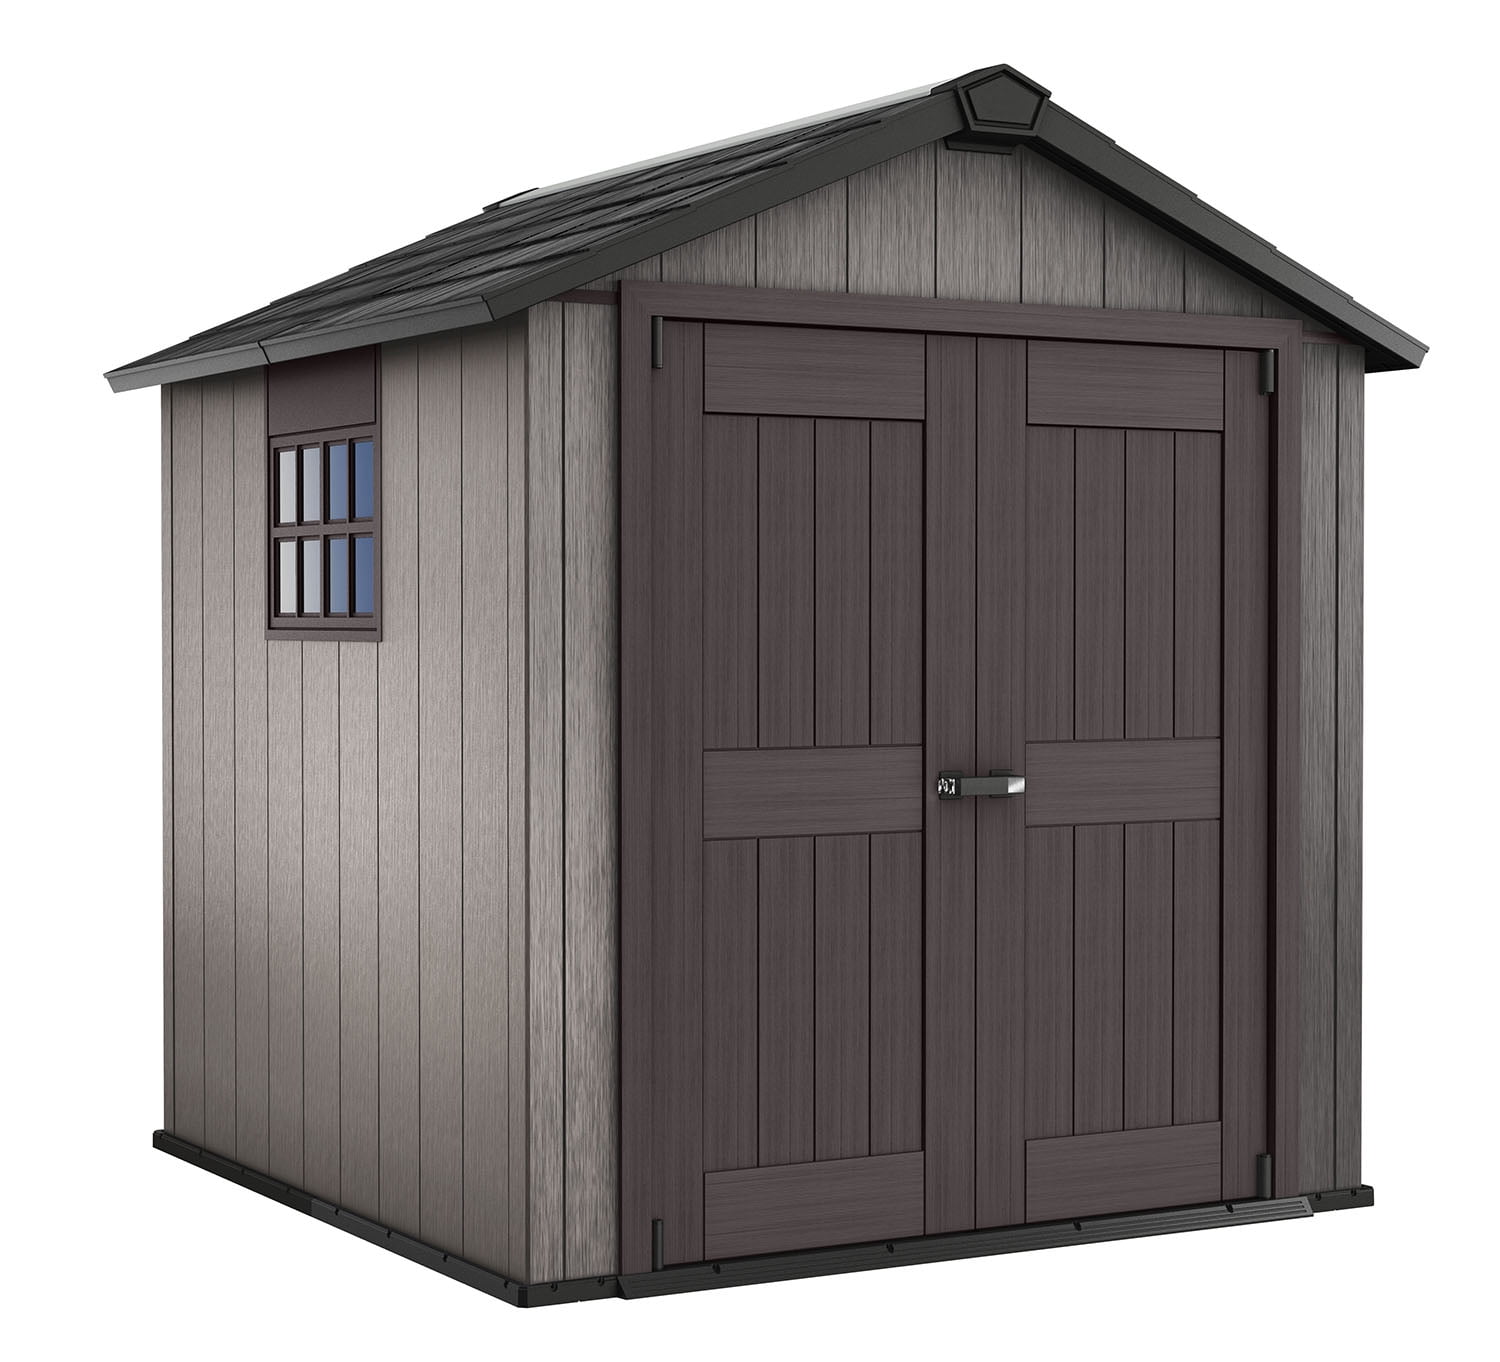 keter storage shed Shed keter storage garden outdoor sheds manor vertical grey ft resin plastic 4×3